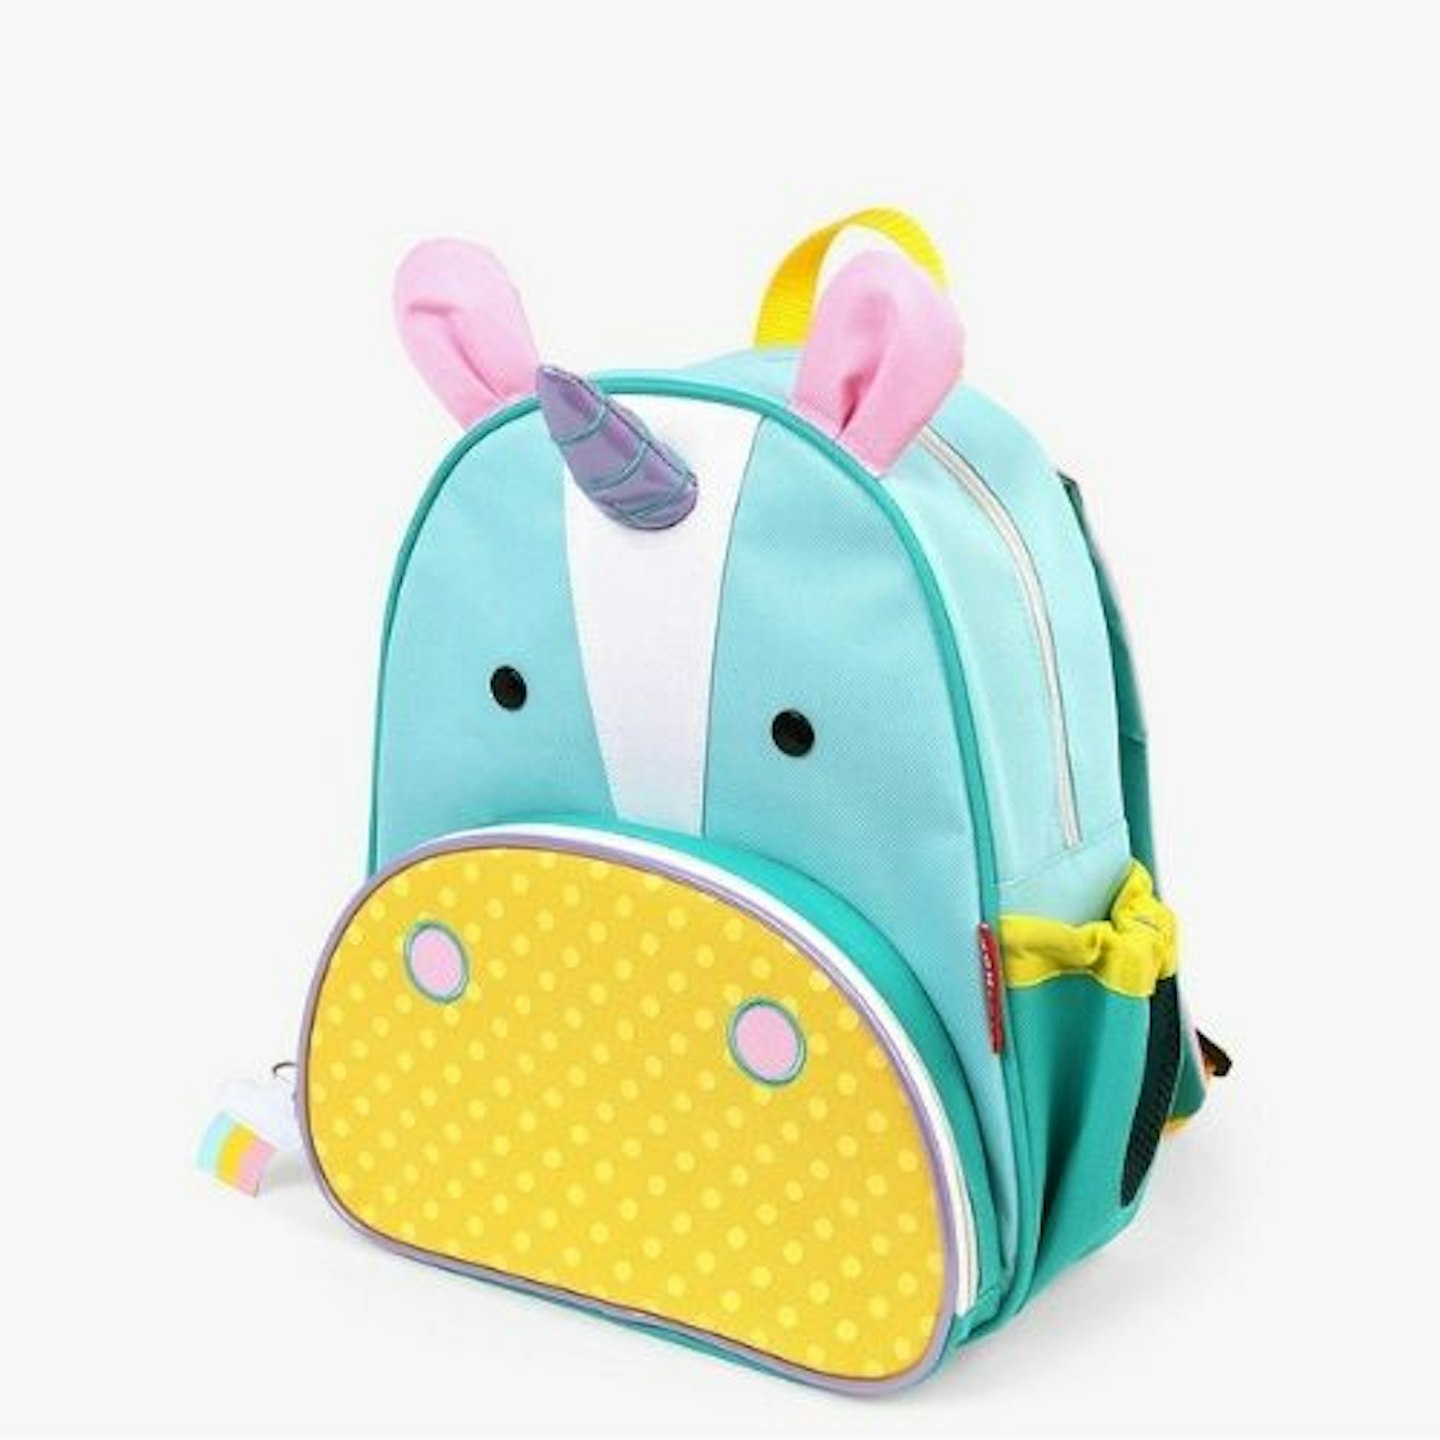 Skip Hop Zoo Unicorn Children's Backpack